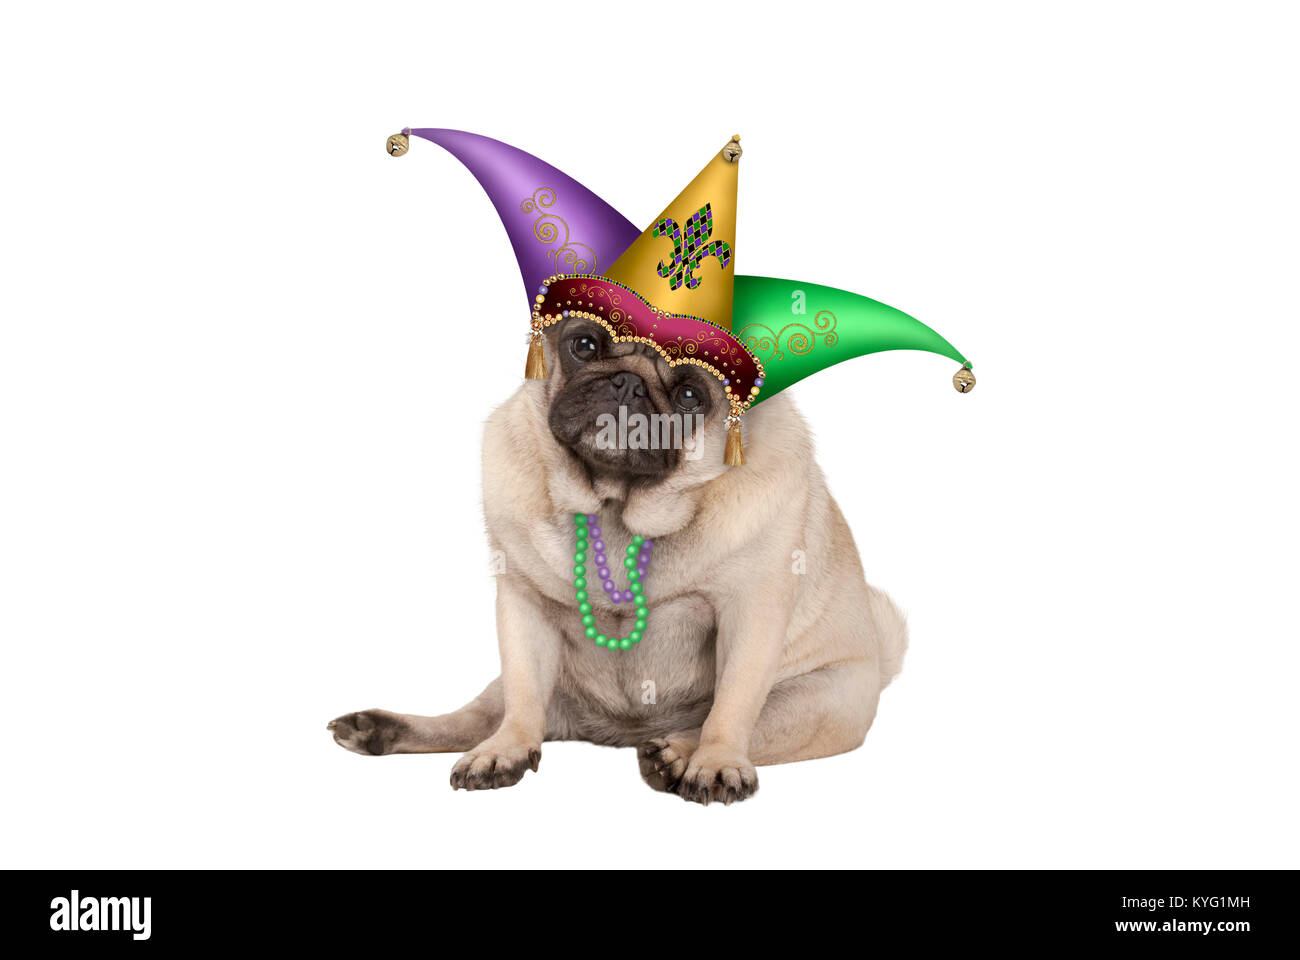 Carino grumpy Mardi Gras carnival pug cucciolo di cane seduto con la harlequin jester hat, isolato su sfondo bianco Foto Stock